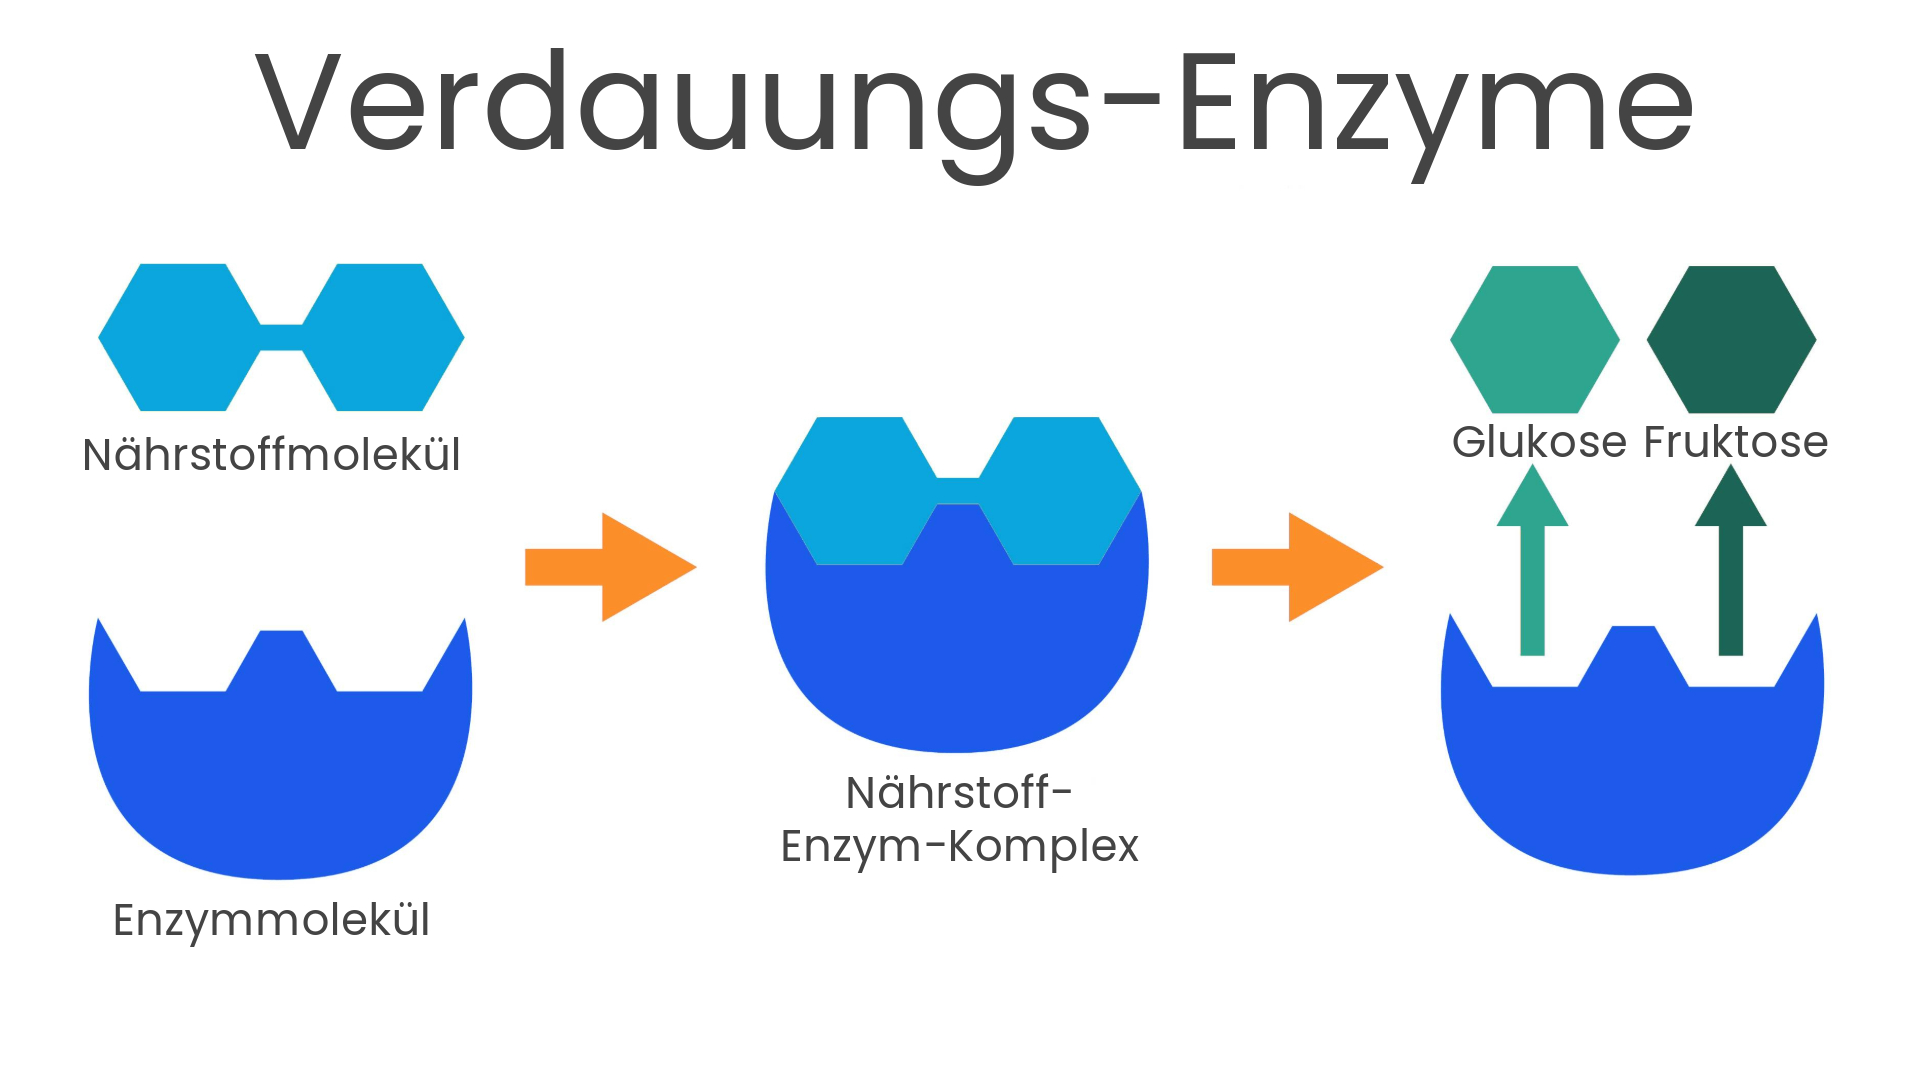 Verdauungs-Enzyme